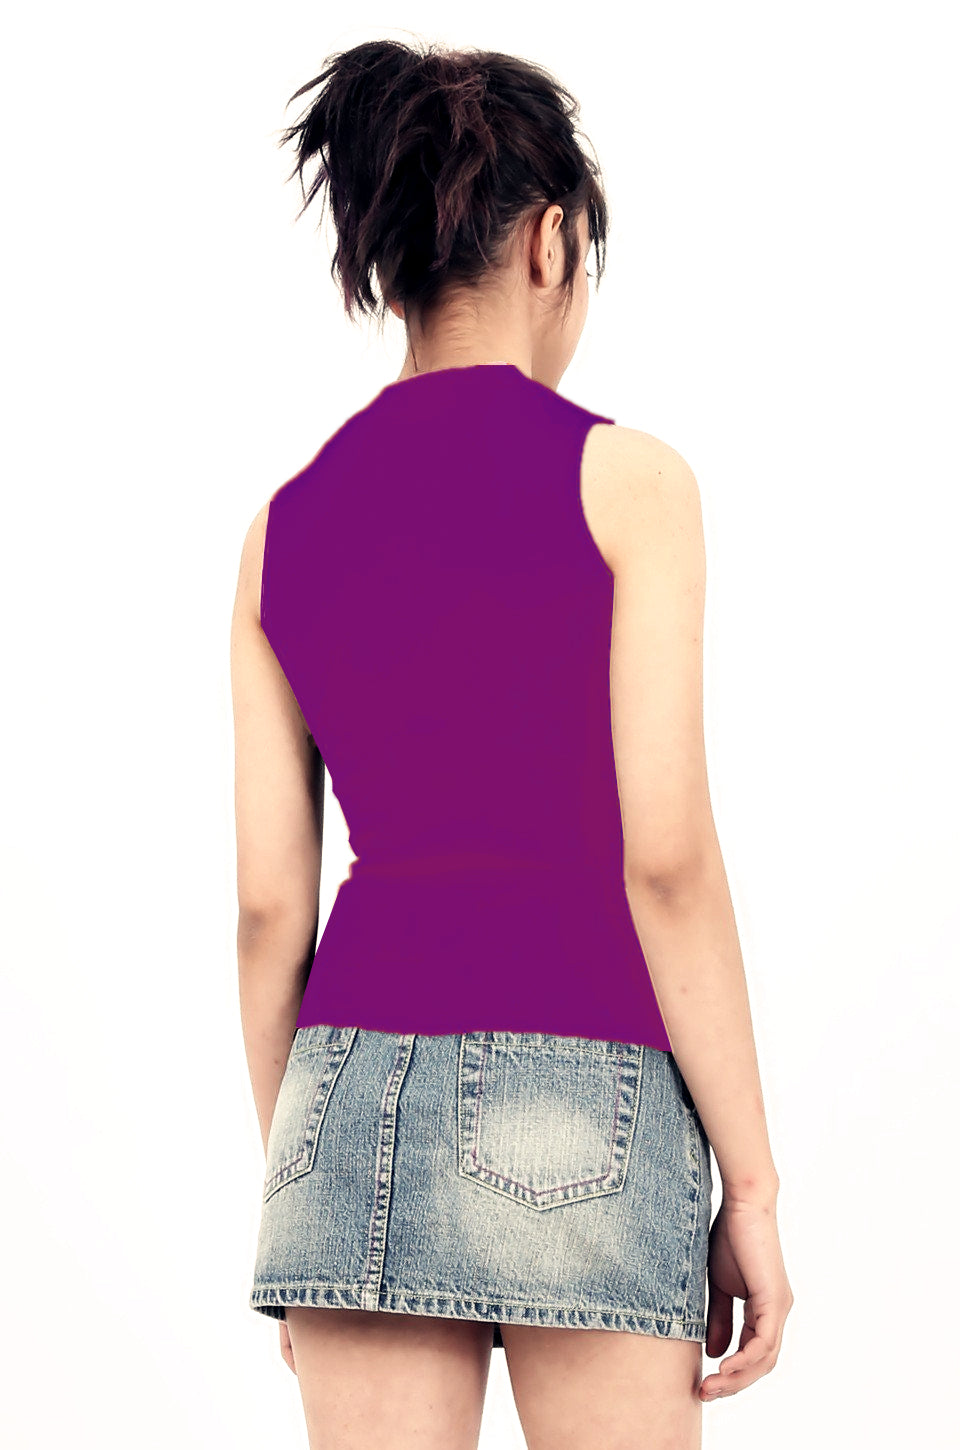 MISS PINKI Madelyn sleeveless knitwear top - purple - high neck knitwear - Petite